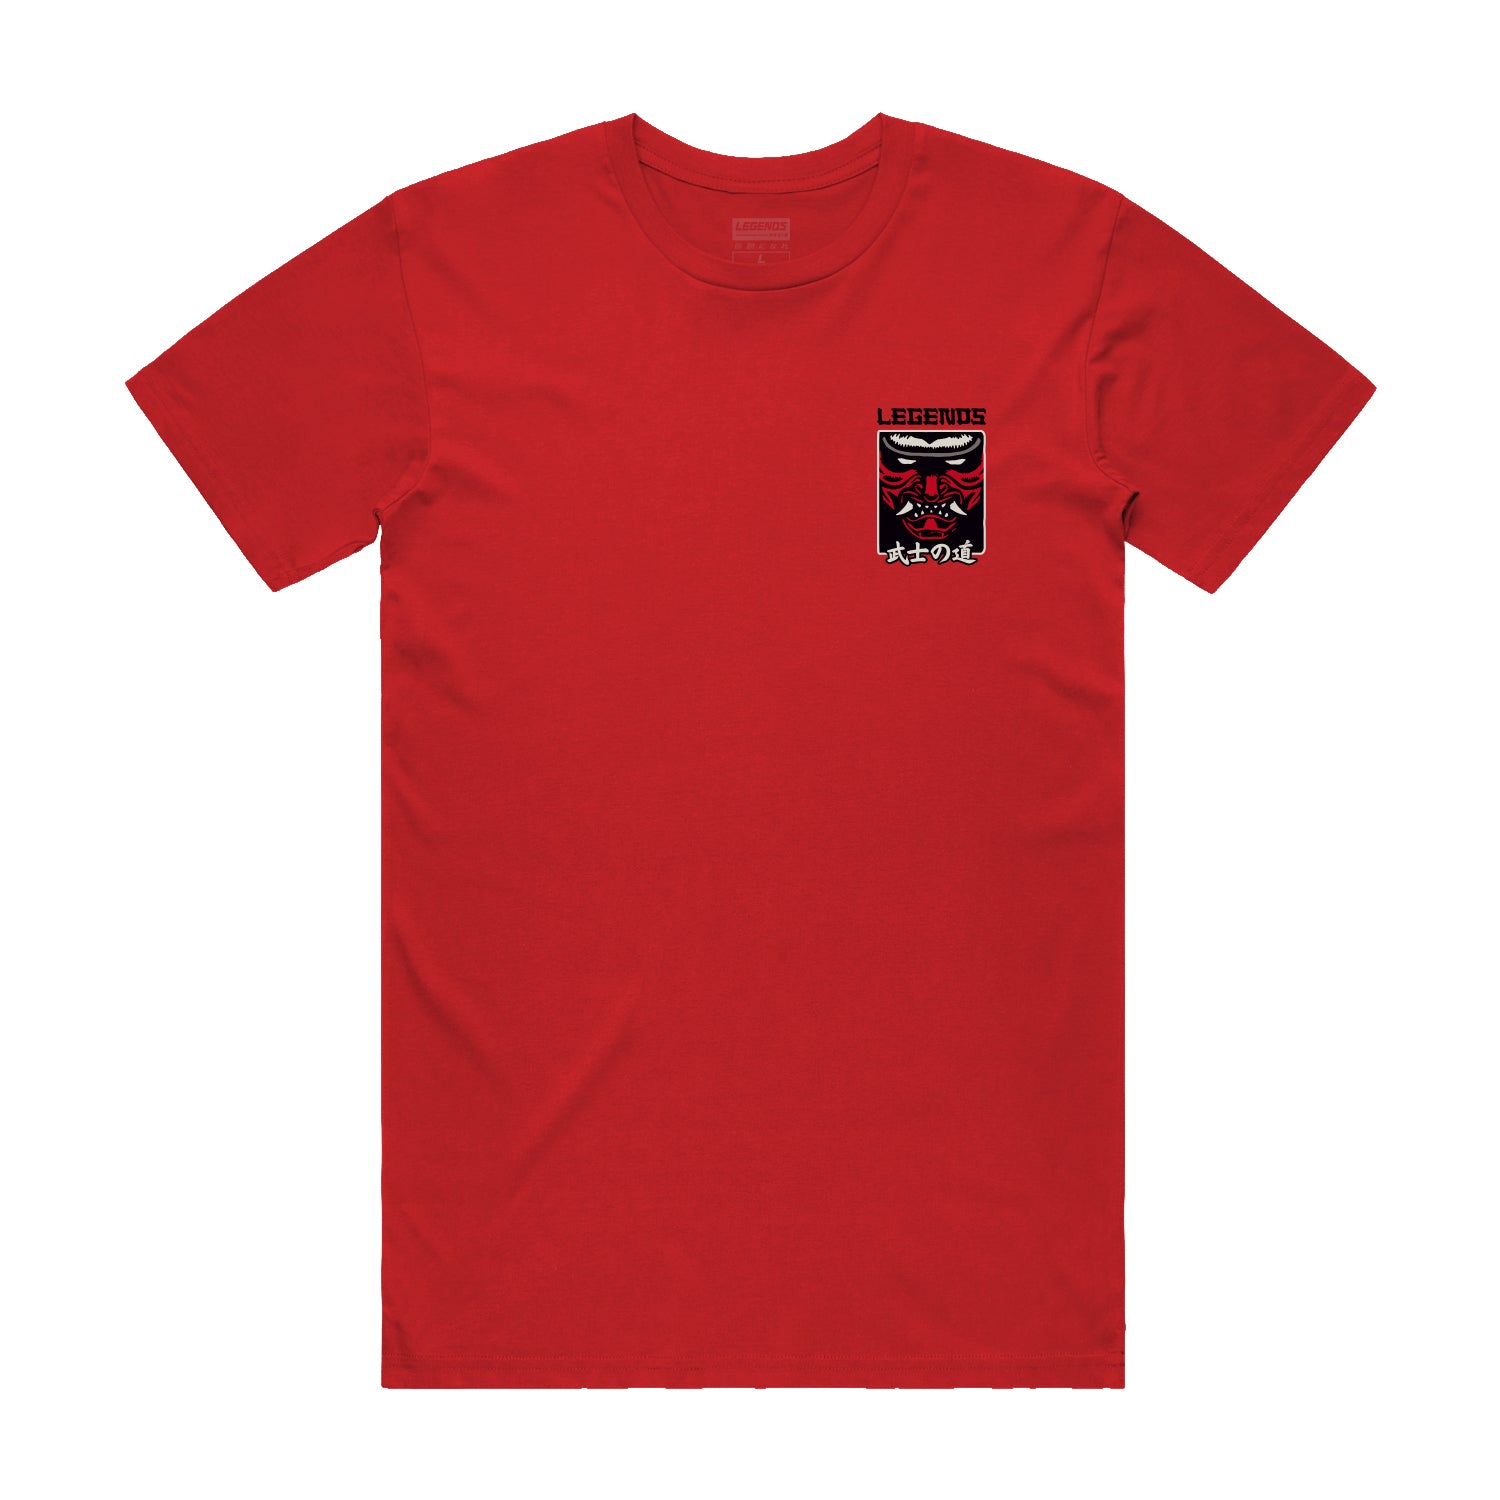 Tshirt - Red Bushido